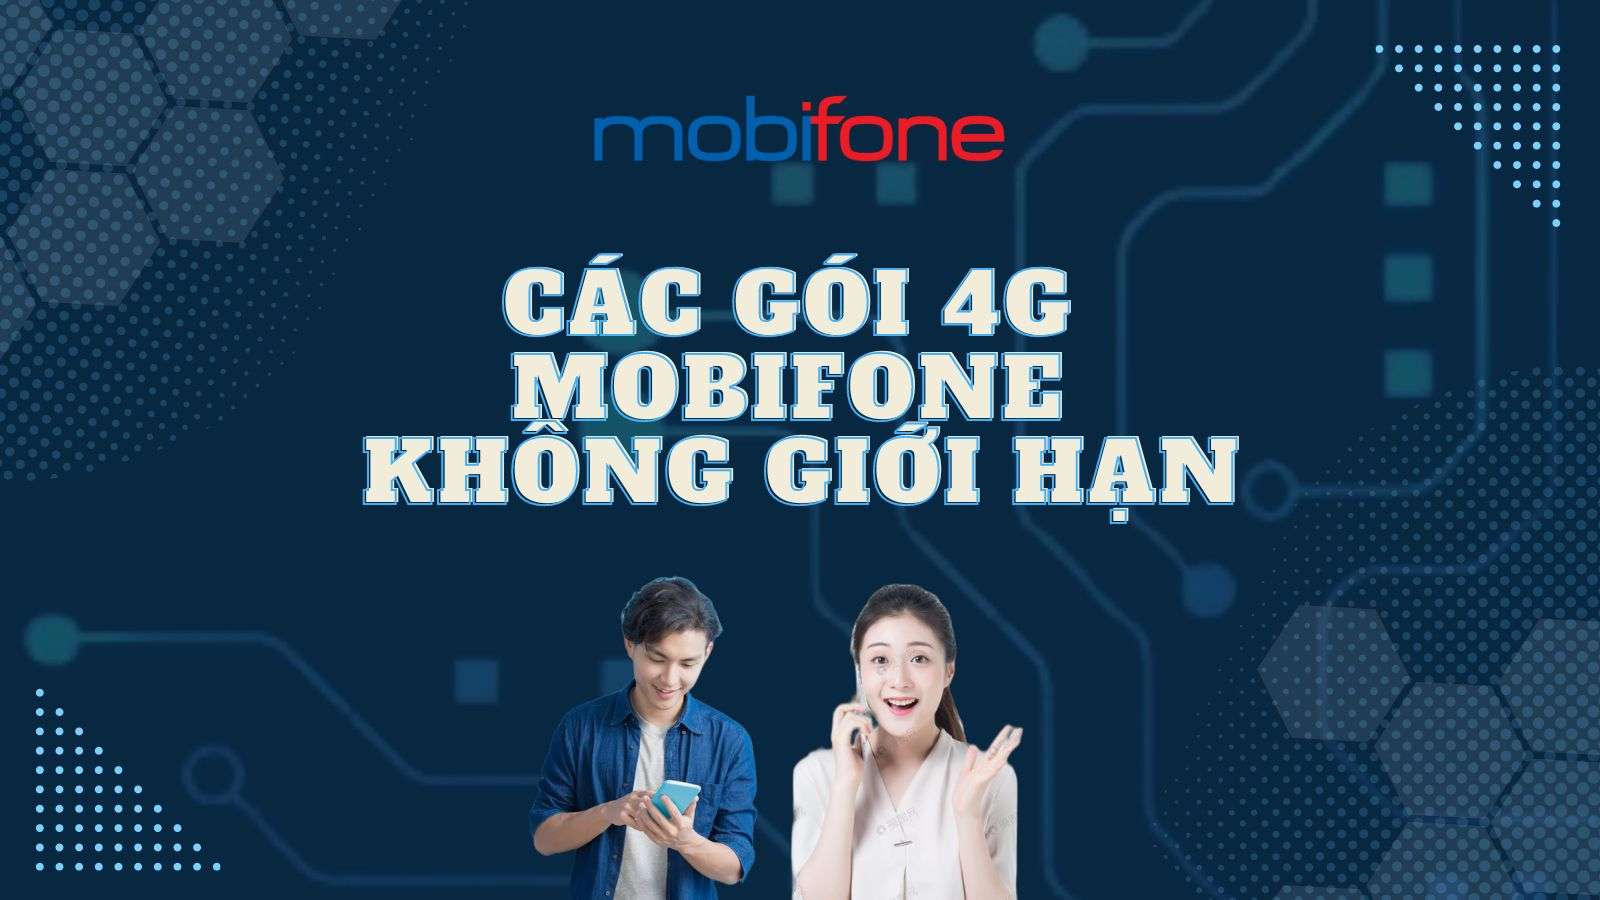 goi-cuoc-4g-mobifone-khong-gioi-han-1.jpg